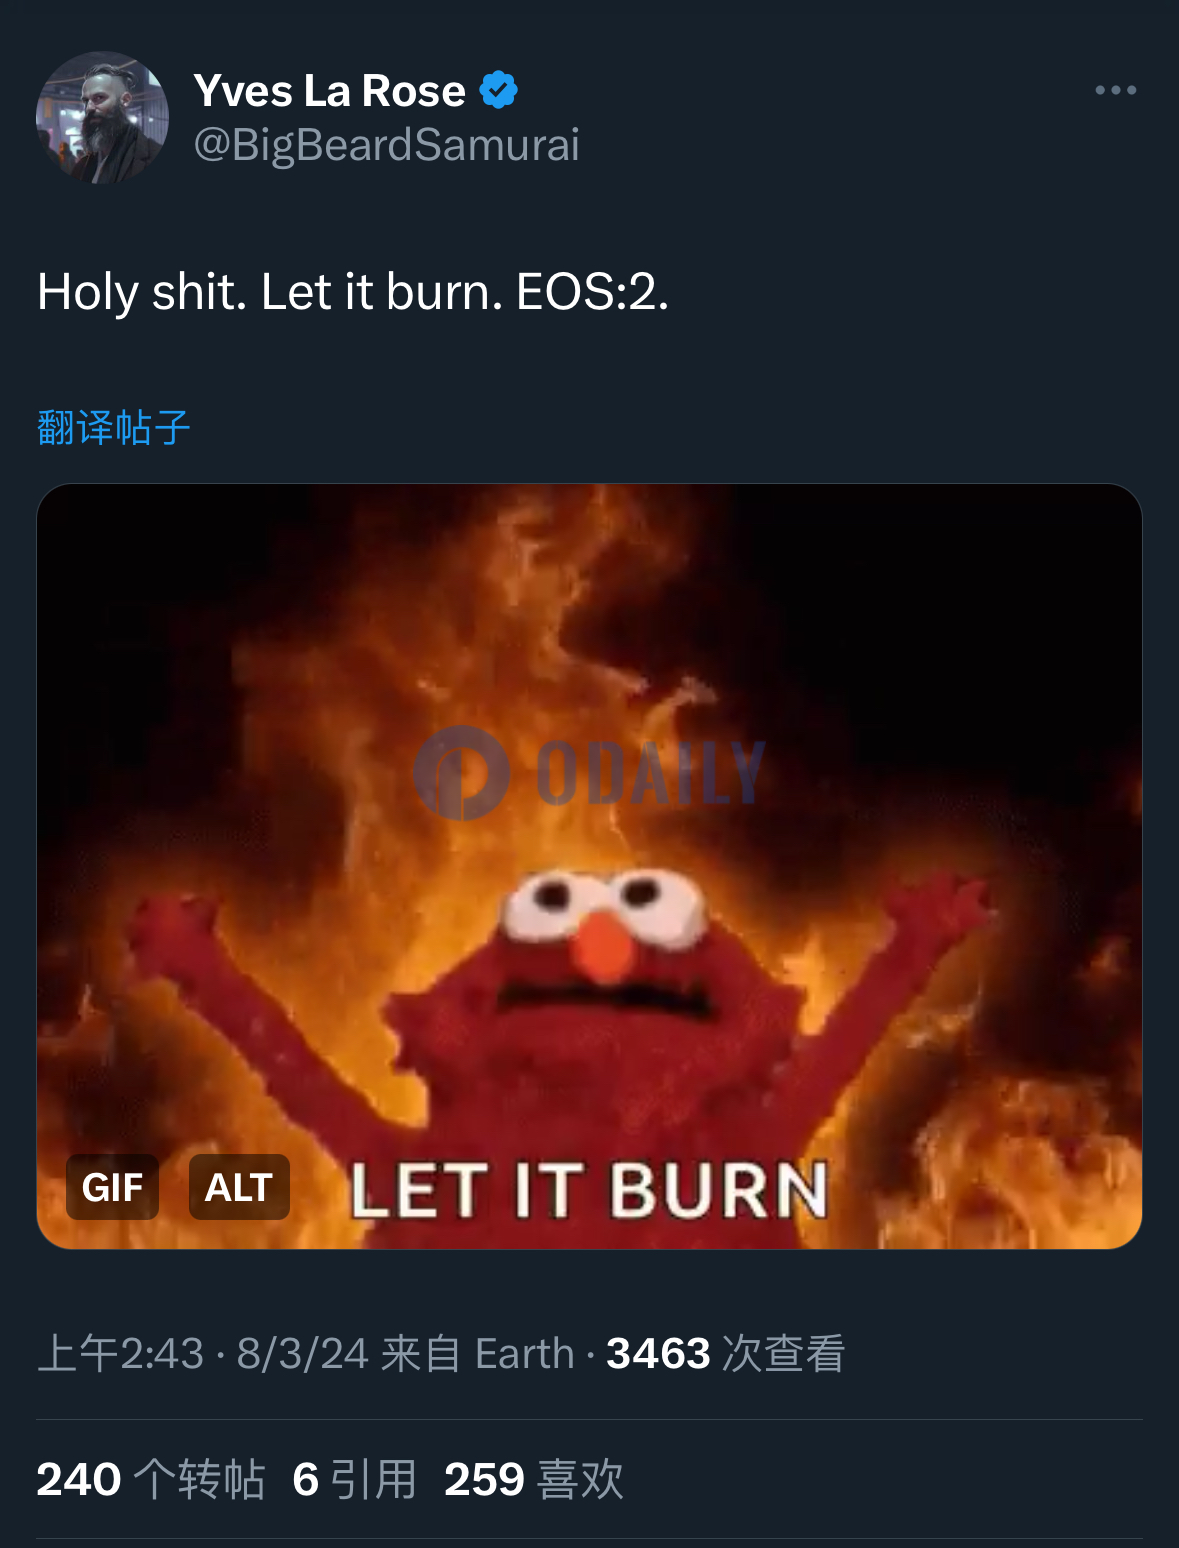 EOS CEO发布“Let it burn. EOS:2”推文，EOS短时涨逾20%